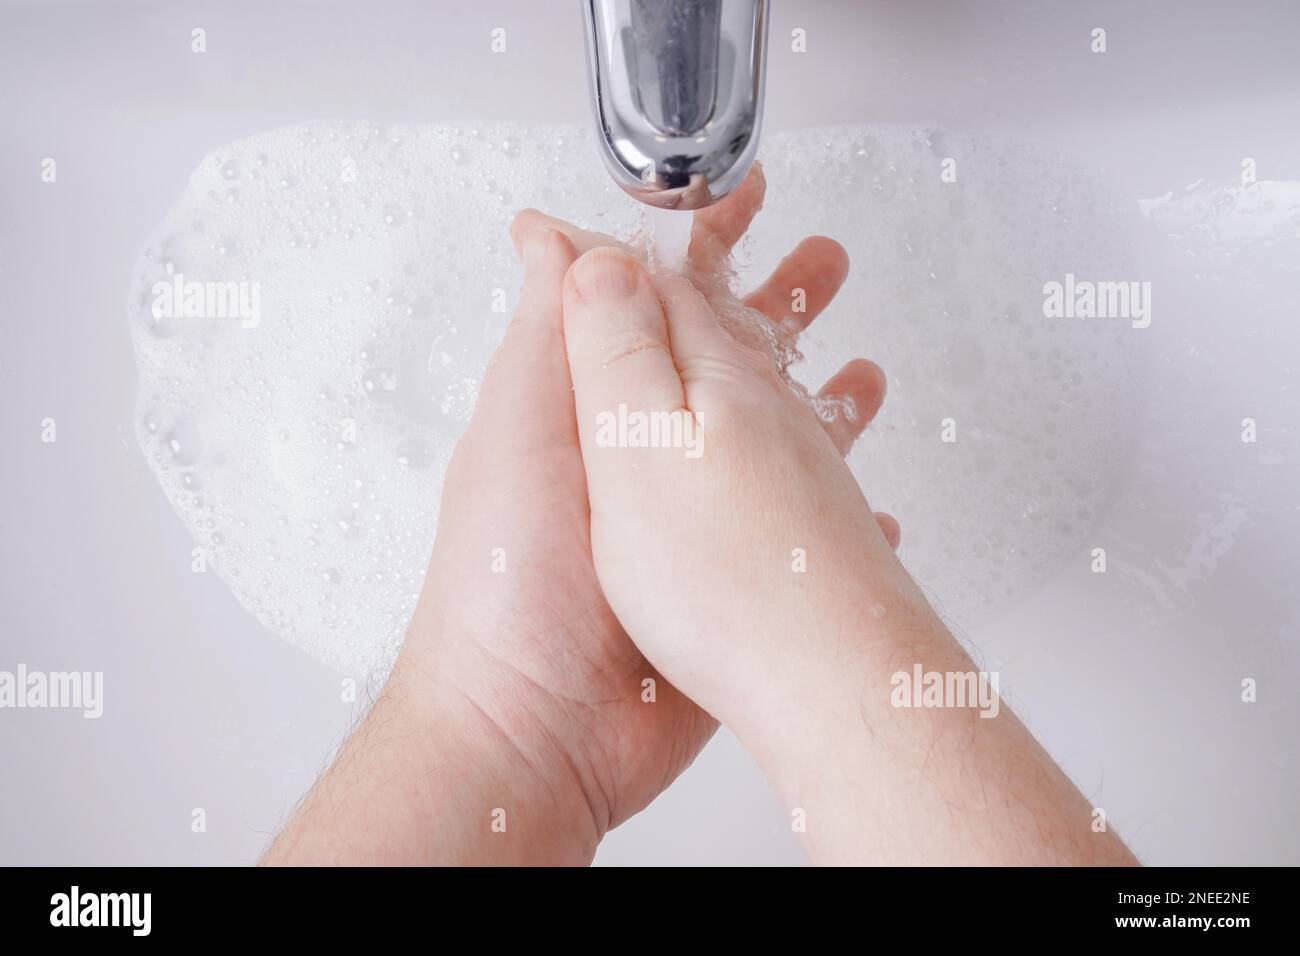 lavando le mani con sapone e acqua dal punto di vista personale - concetto di igiene con persona maschile non riconoscibile e profondità di campo poco profonda Foto Stock